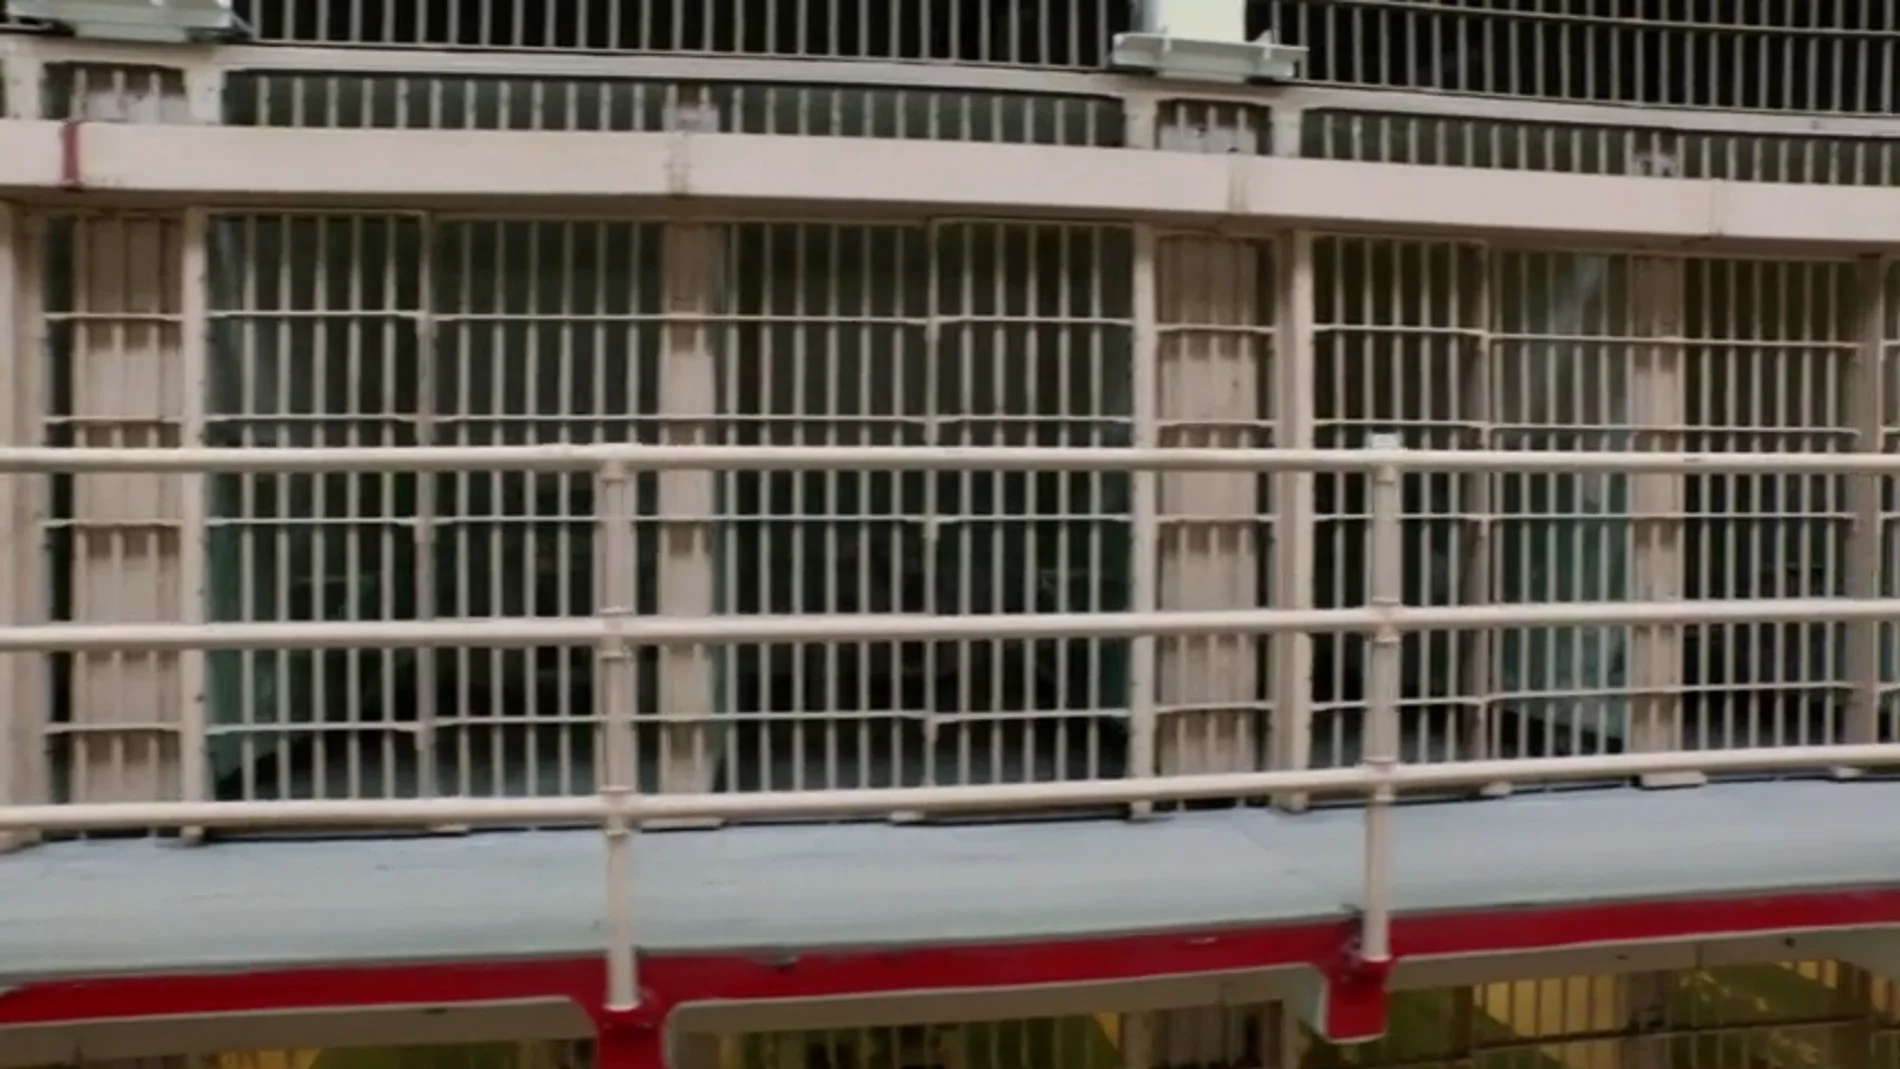 Frame 7.381369 de: ¿Qué pasó con los únicos presos que se fugaron de Alcatraz?